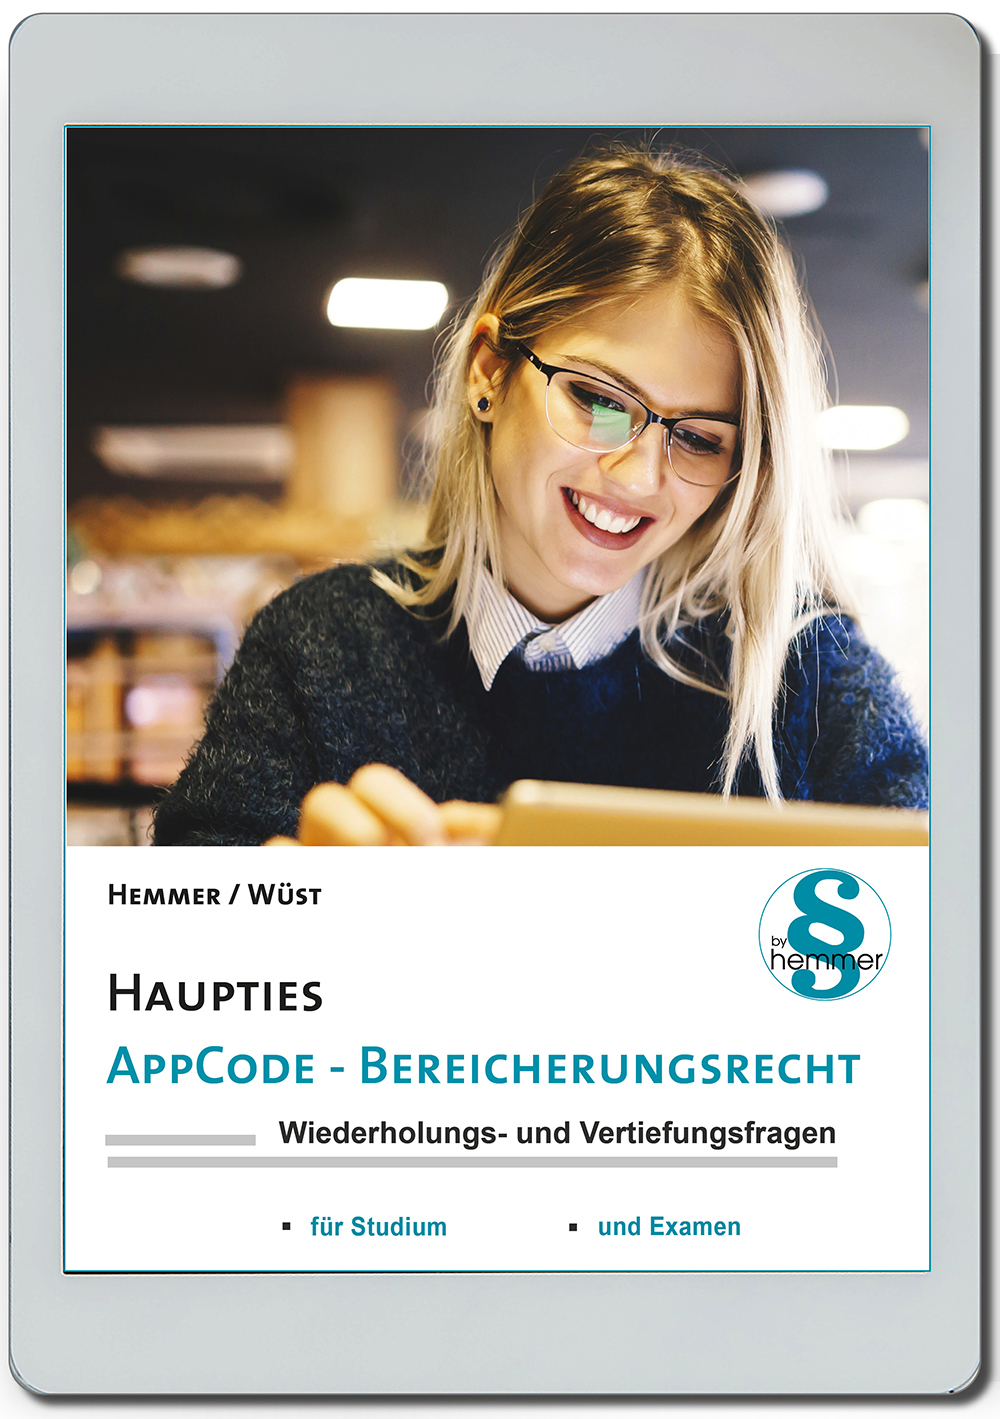 AppCode - haupties - Bereicherungsrecht